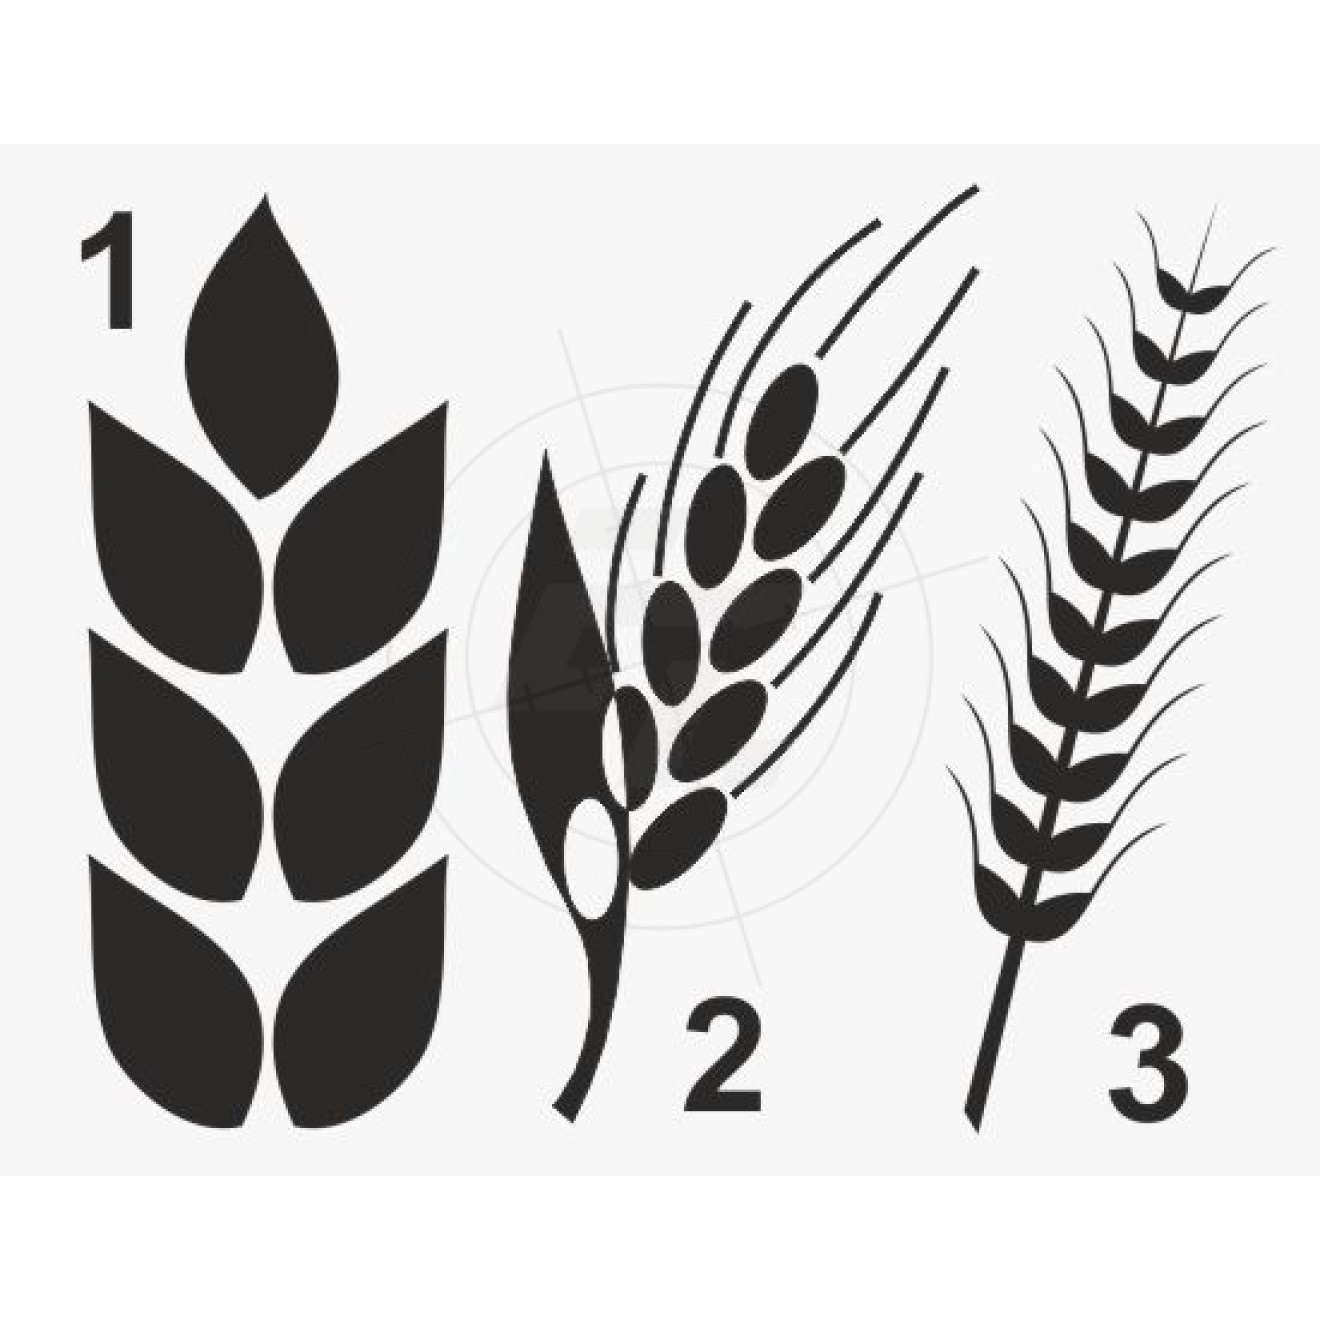 Getreideähren, Roggen, Gerste, Weizen